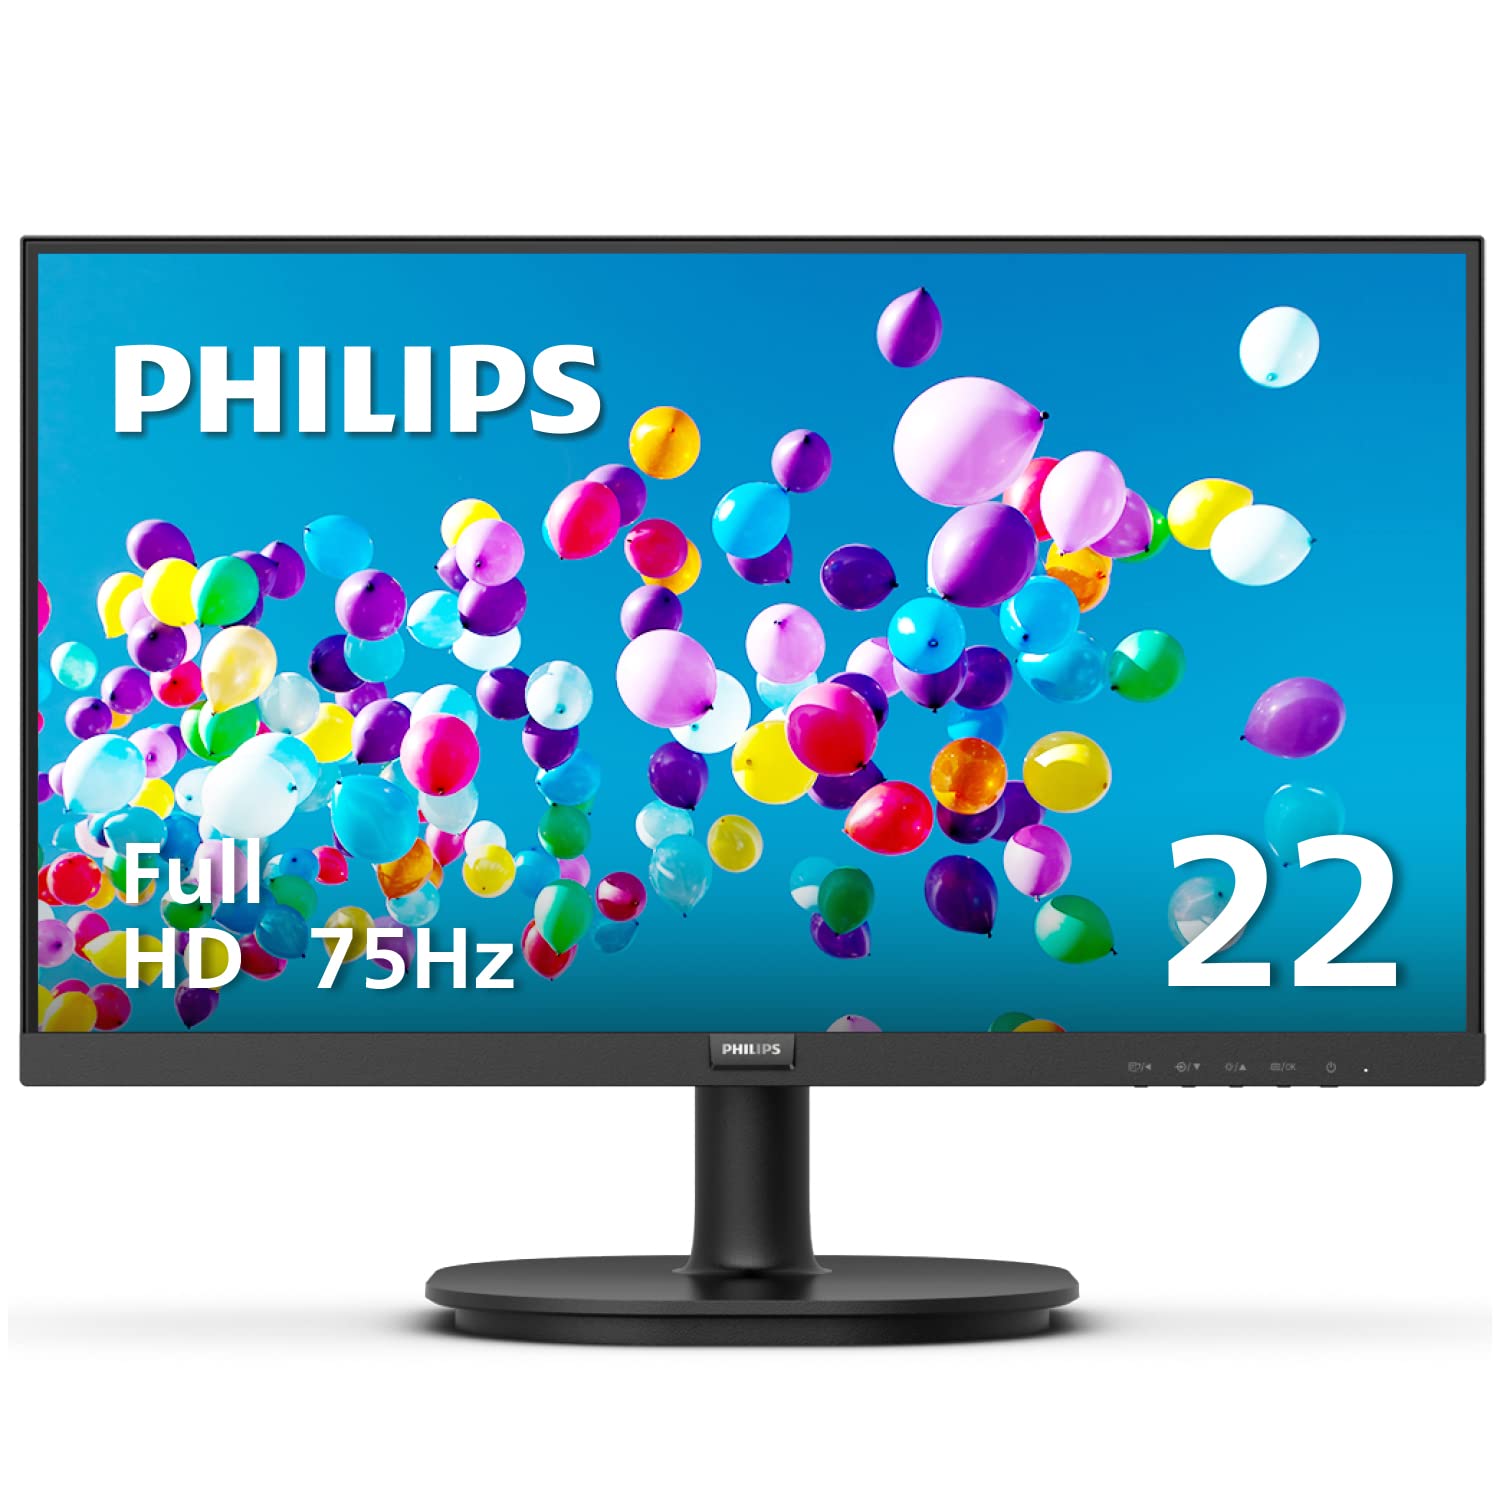 Philips Computer Monitors Philips Pure2